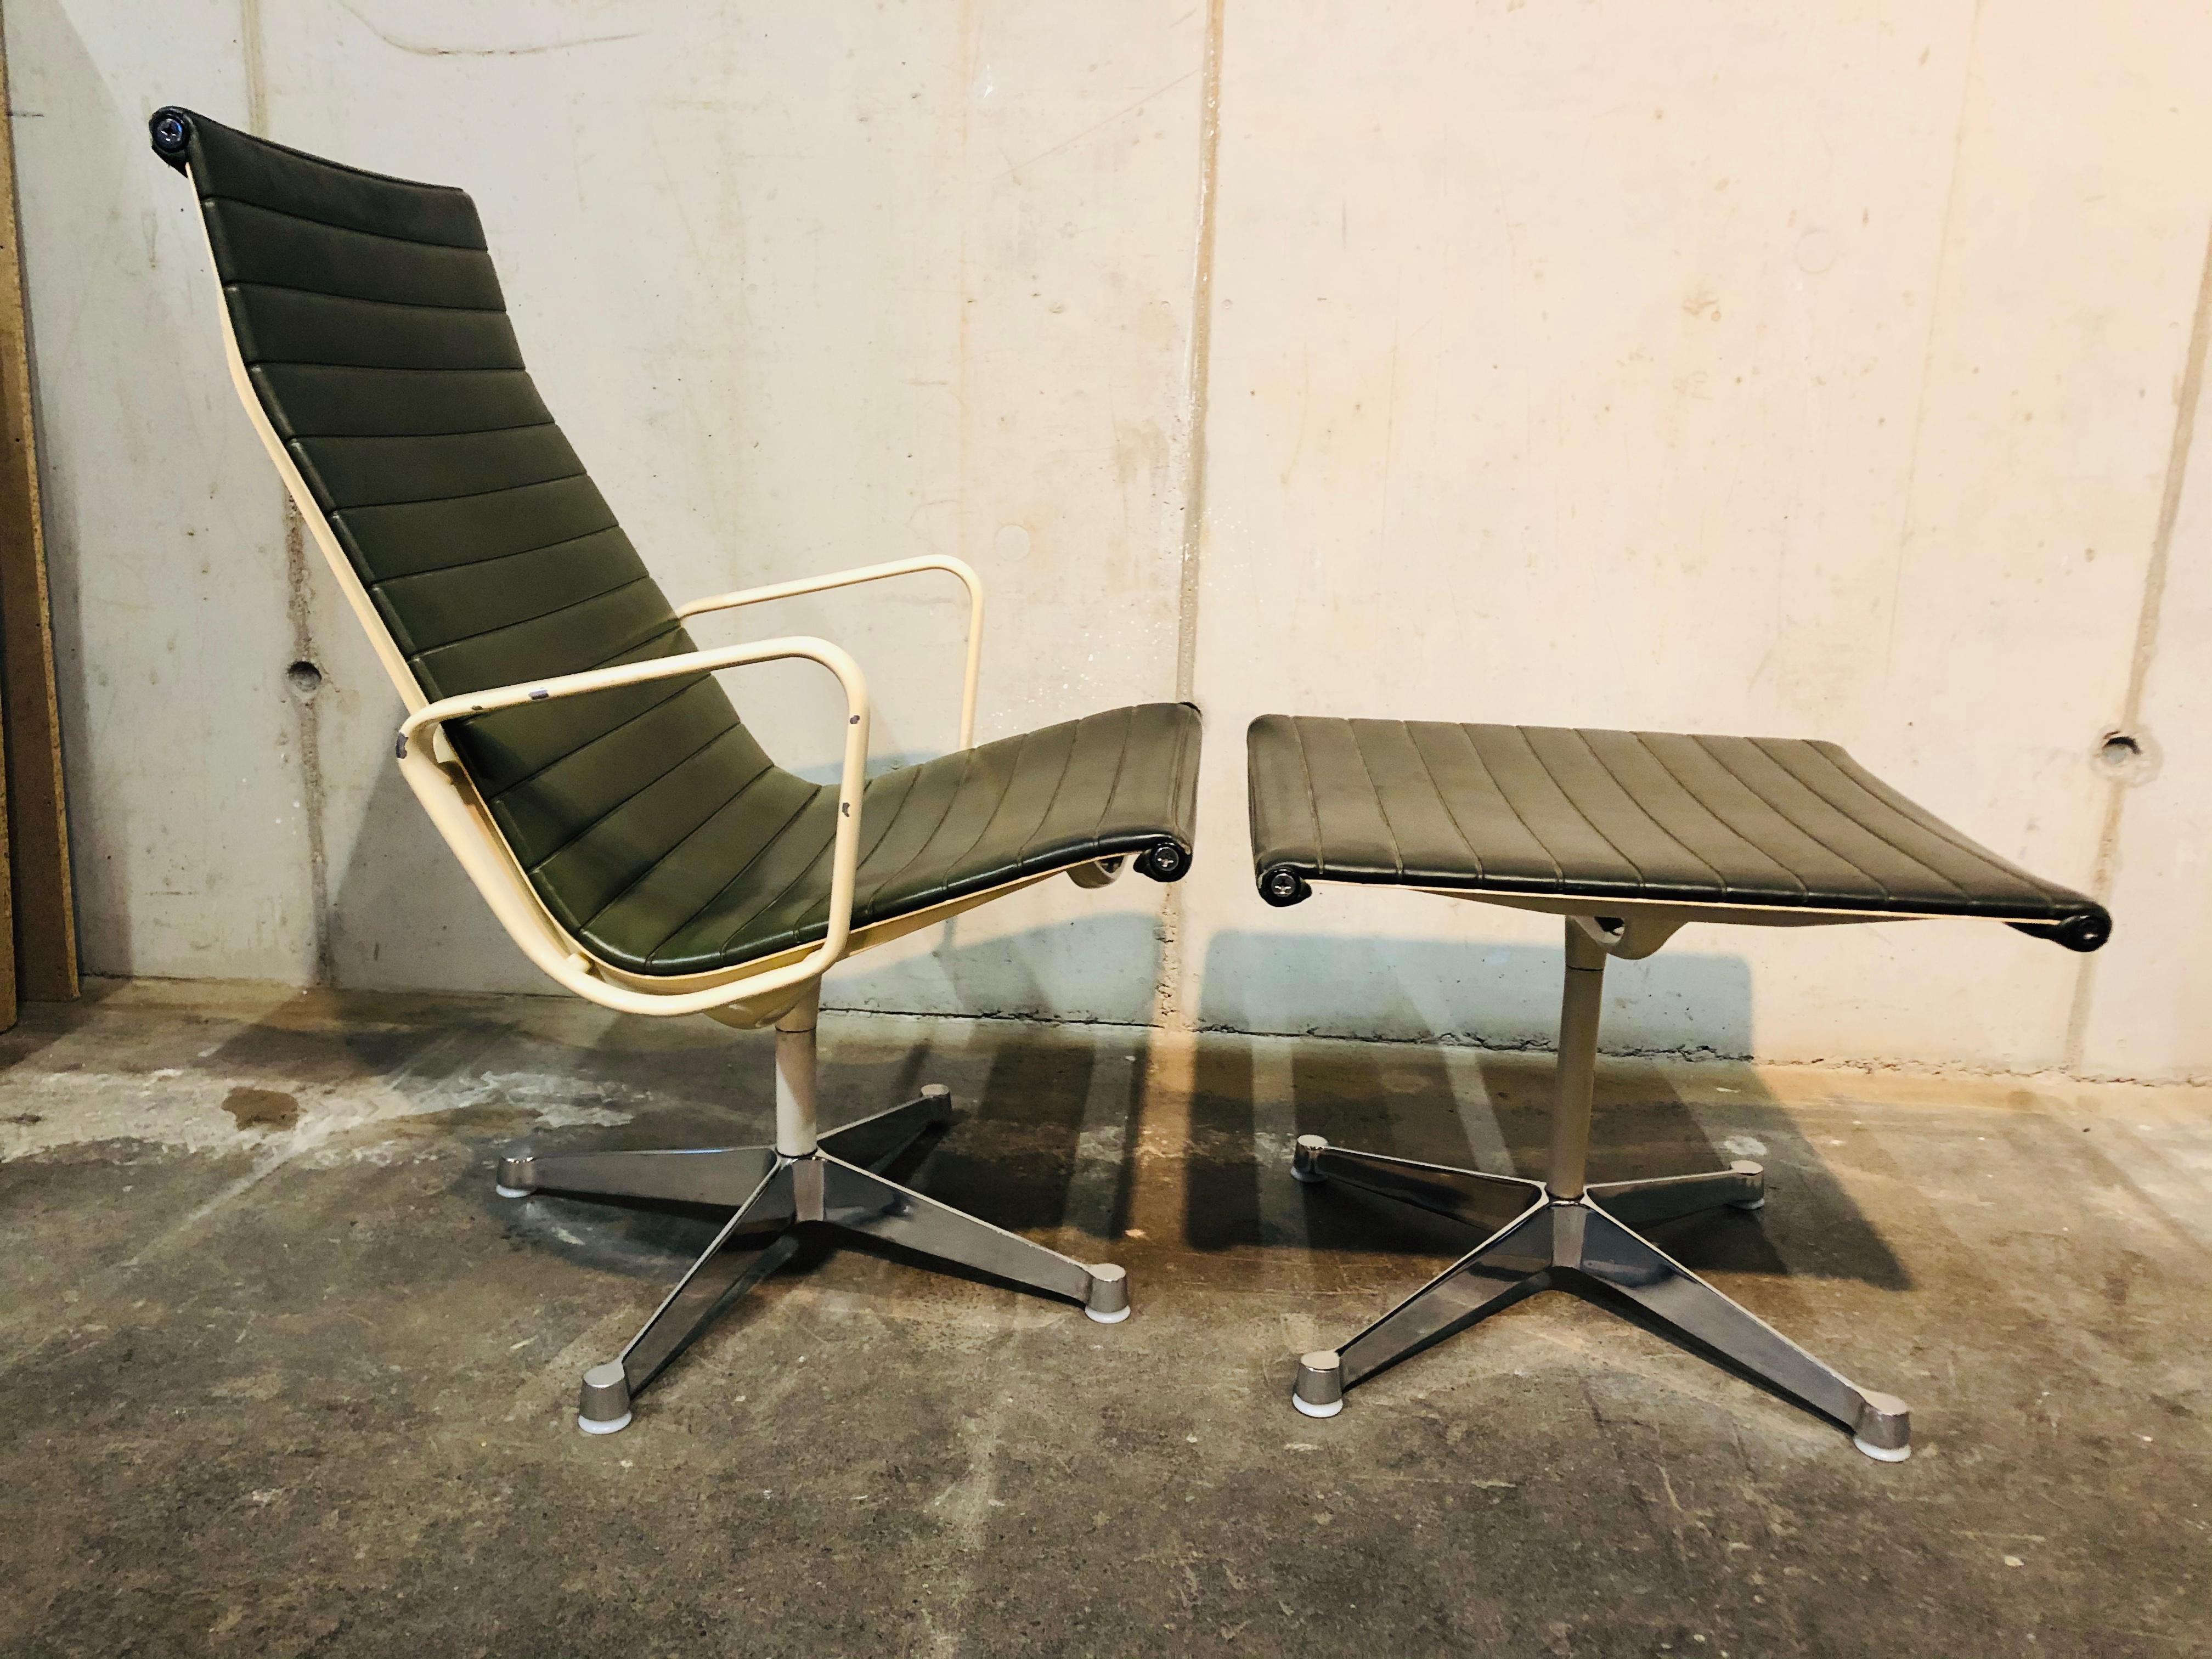 Der Alumnium Chair von Eames ist einer der wichtigsten Entwürfe des 20. Jahrhunderts. Ursprünglich hatten Charles und Ray Eames ihn 1958 für das Privathaus eines Kunstsammlers in Columbus (Indiana:: USA) entworfen. Für diesen Entwurf hat das Ehepaar